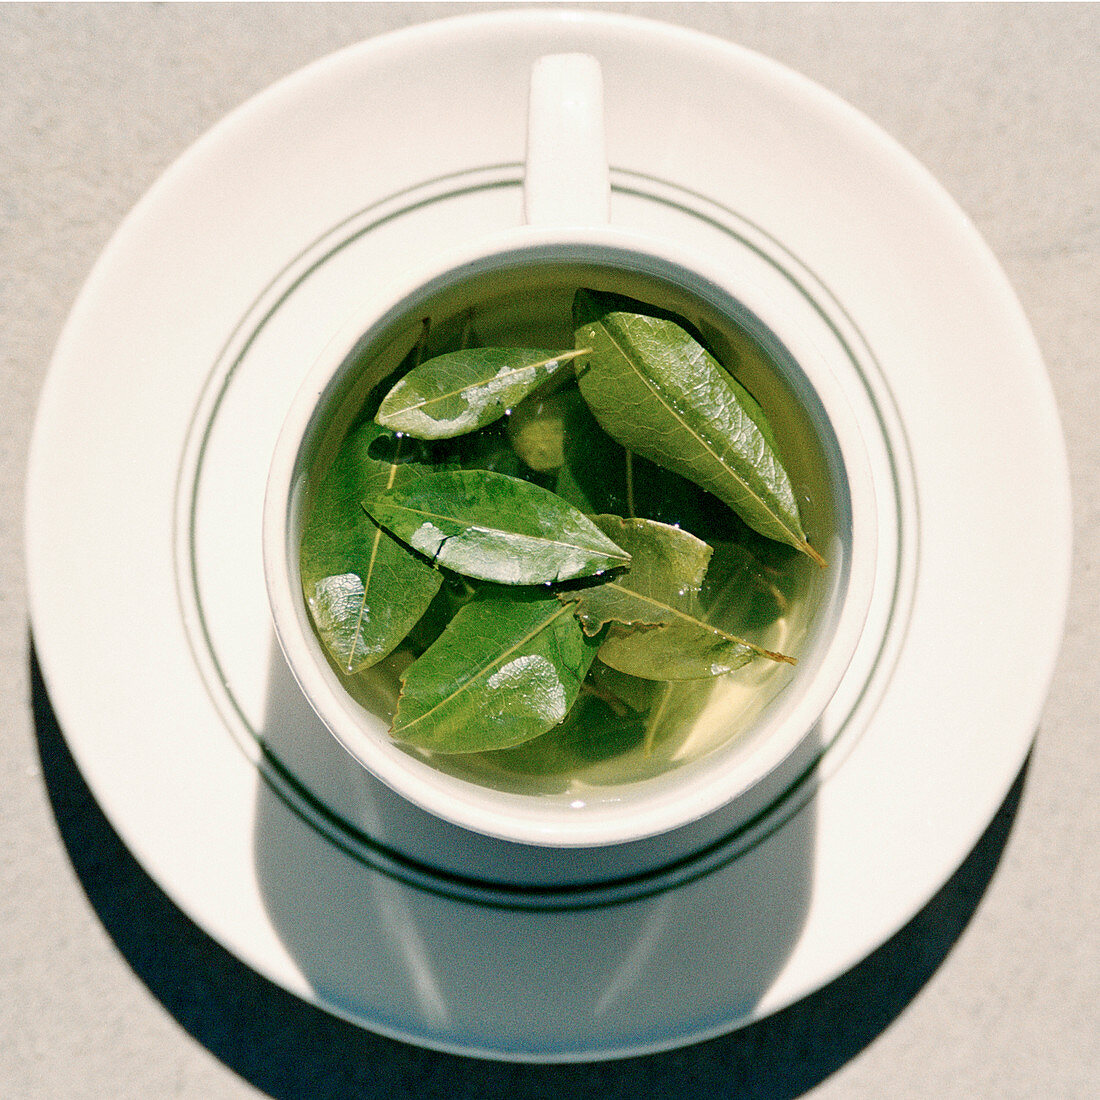 Coca leaf tea